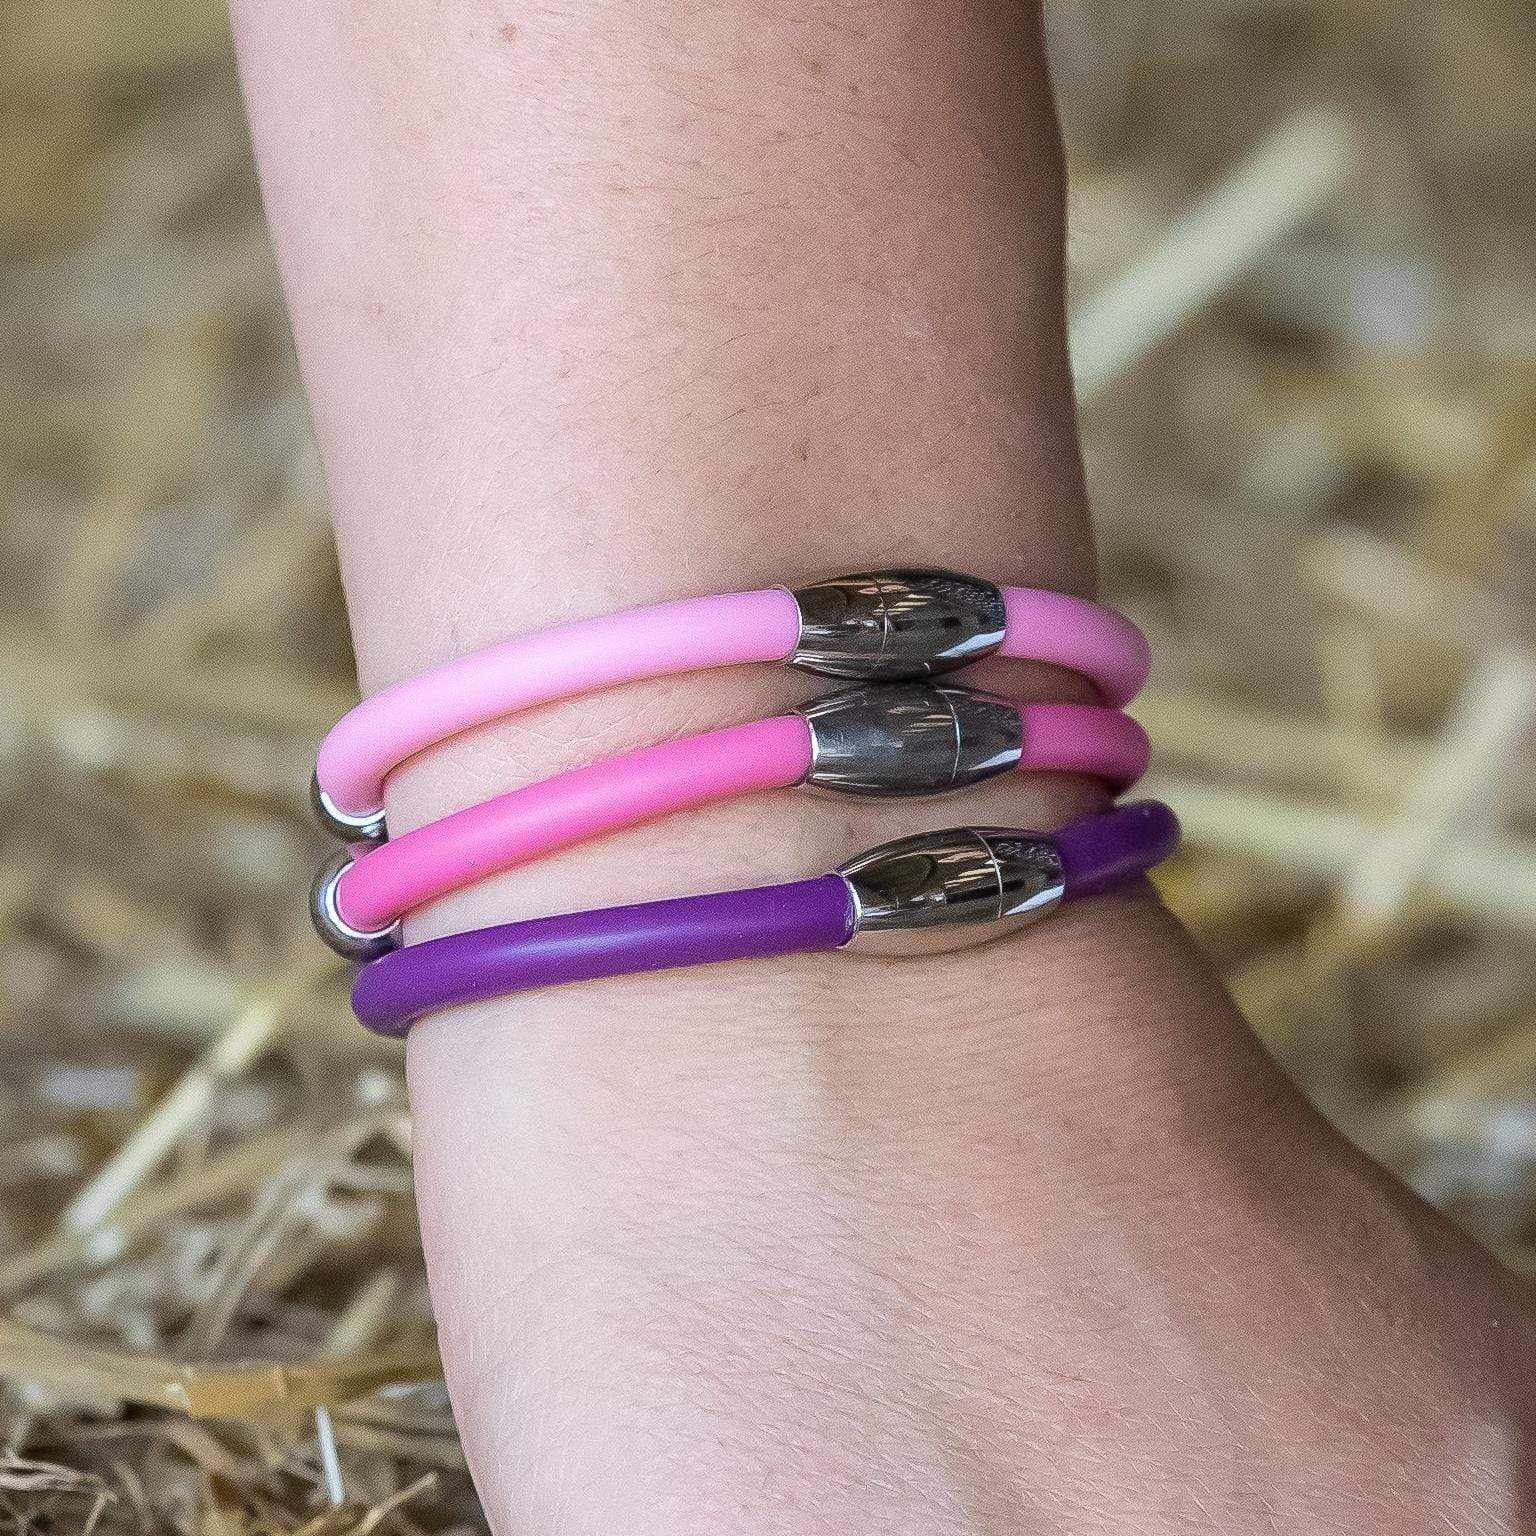 PEGASUS JEWELLERY Vitality Bracelets PEGASUS VITALITY MAGNETIC BRACELET- New Blush Pink